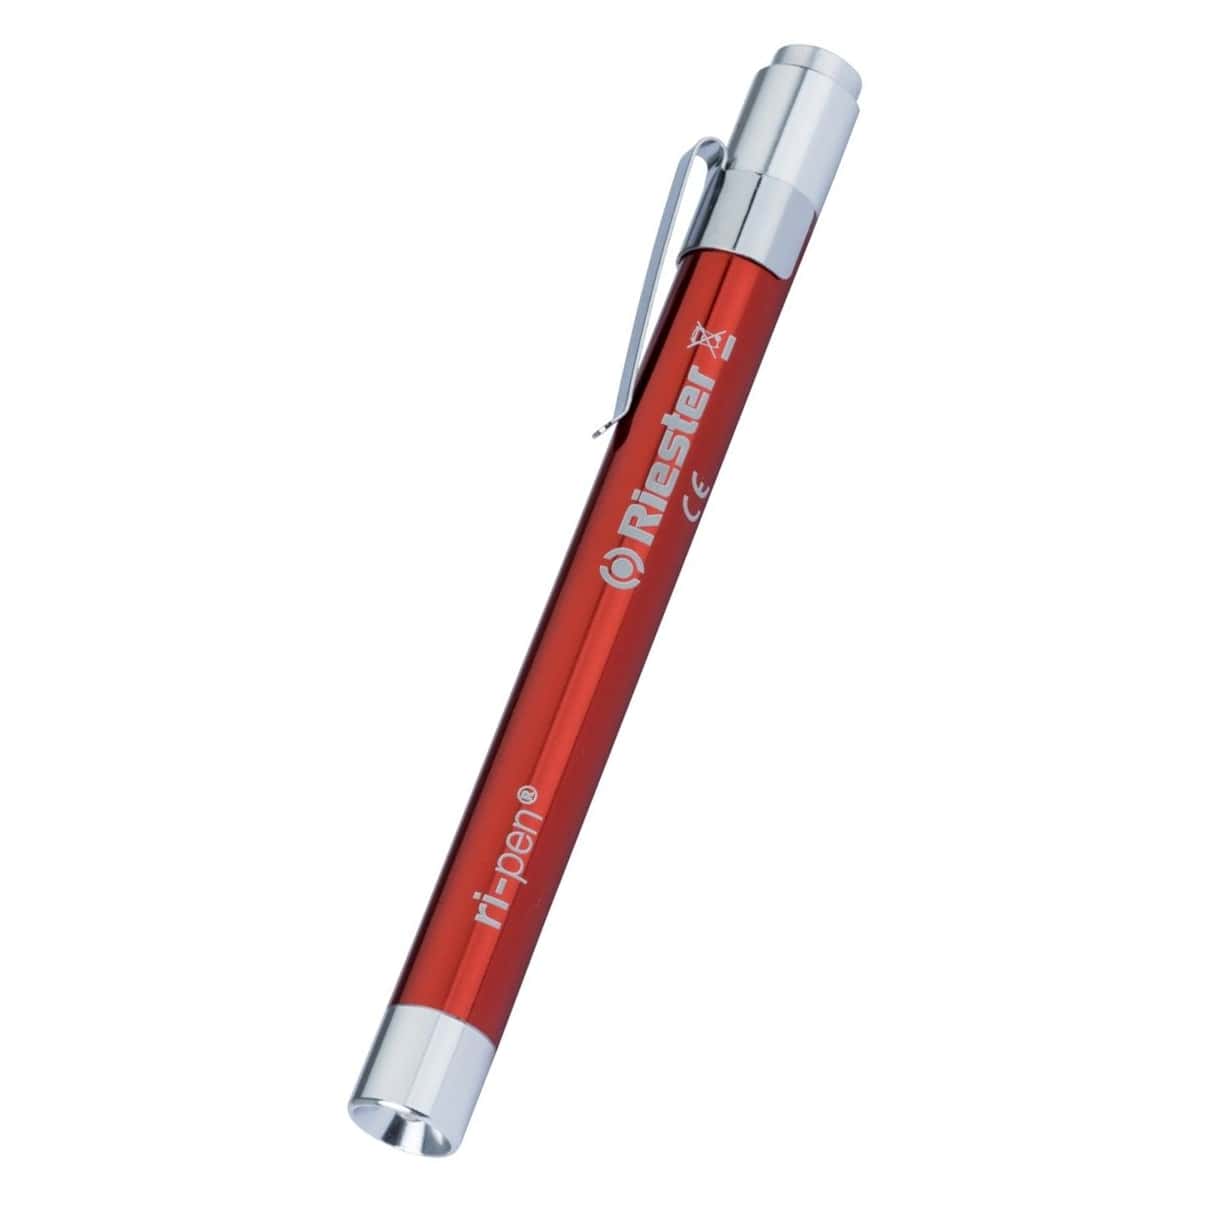 نکته خرید - قیمت روز چراغ قوه پزشکی ریشتر مدل ri-pen خرید